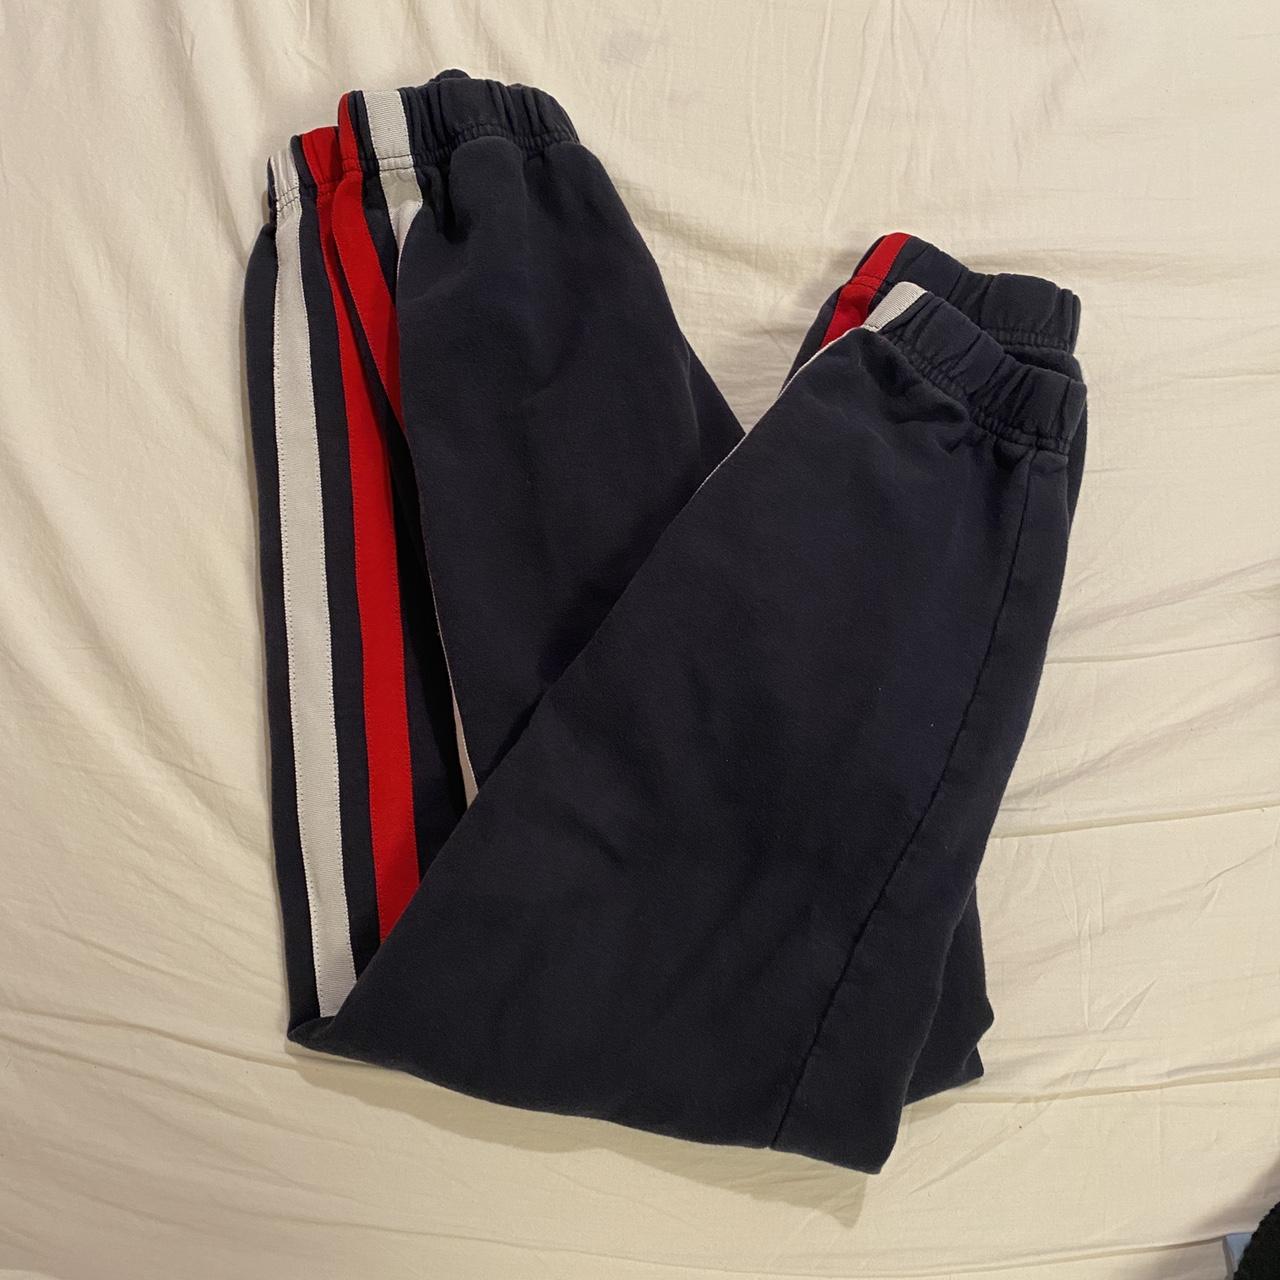 Brandy Melville, Jackets & Coats, Brandy Melville Jacket With  Navywhitered Stripes Onesize